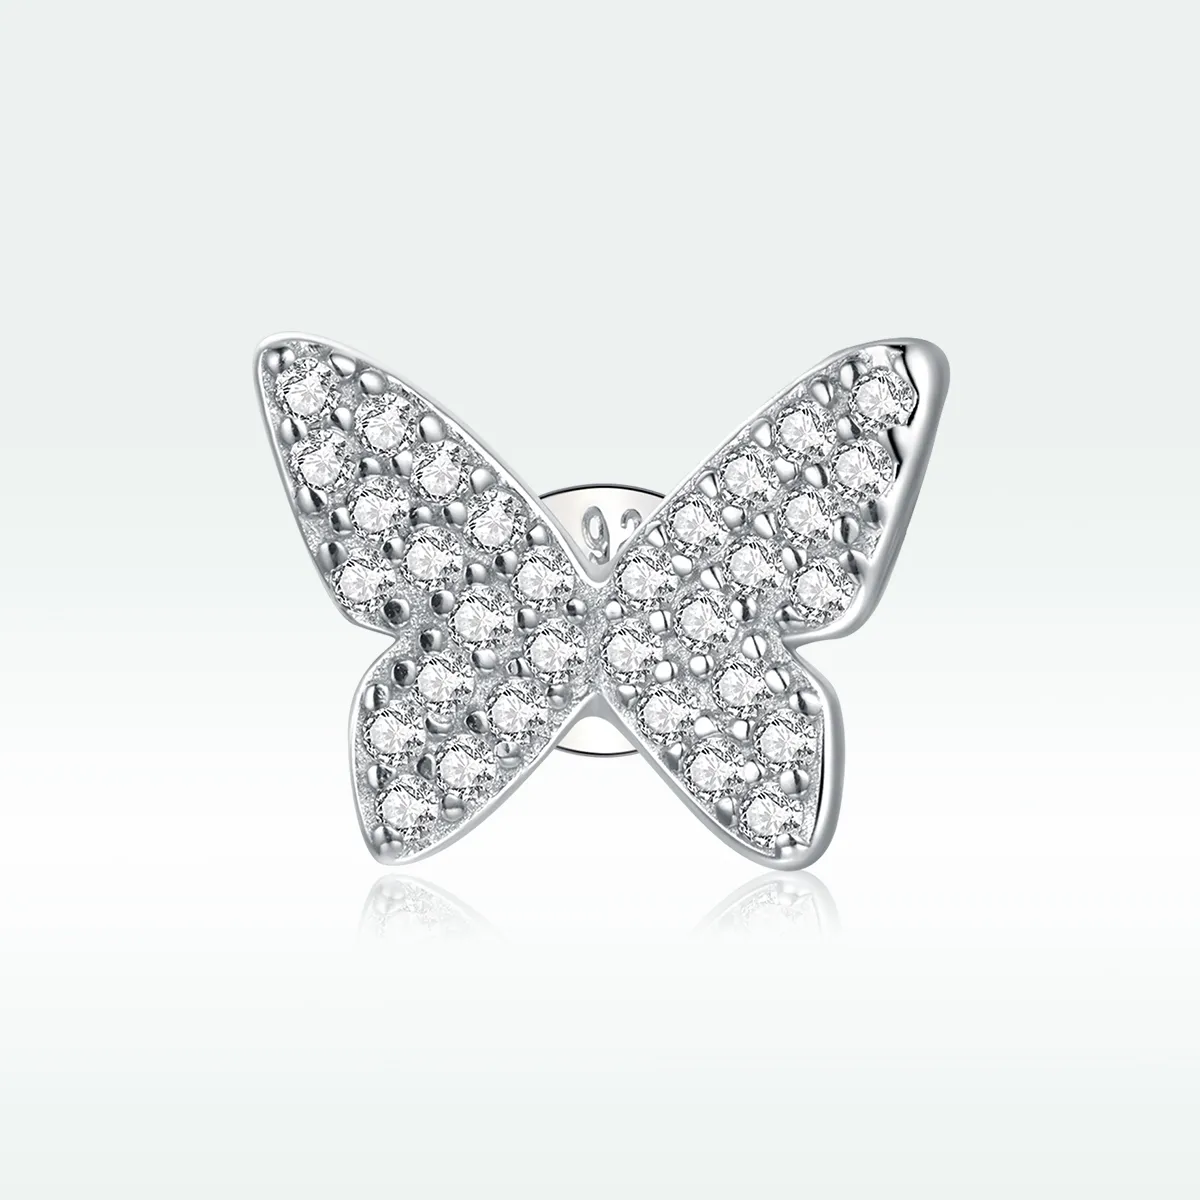 Pandora Style Silver Single Butterfly Stud Earrings - SCE1068